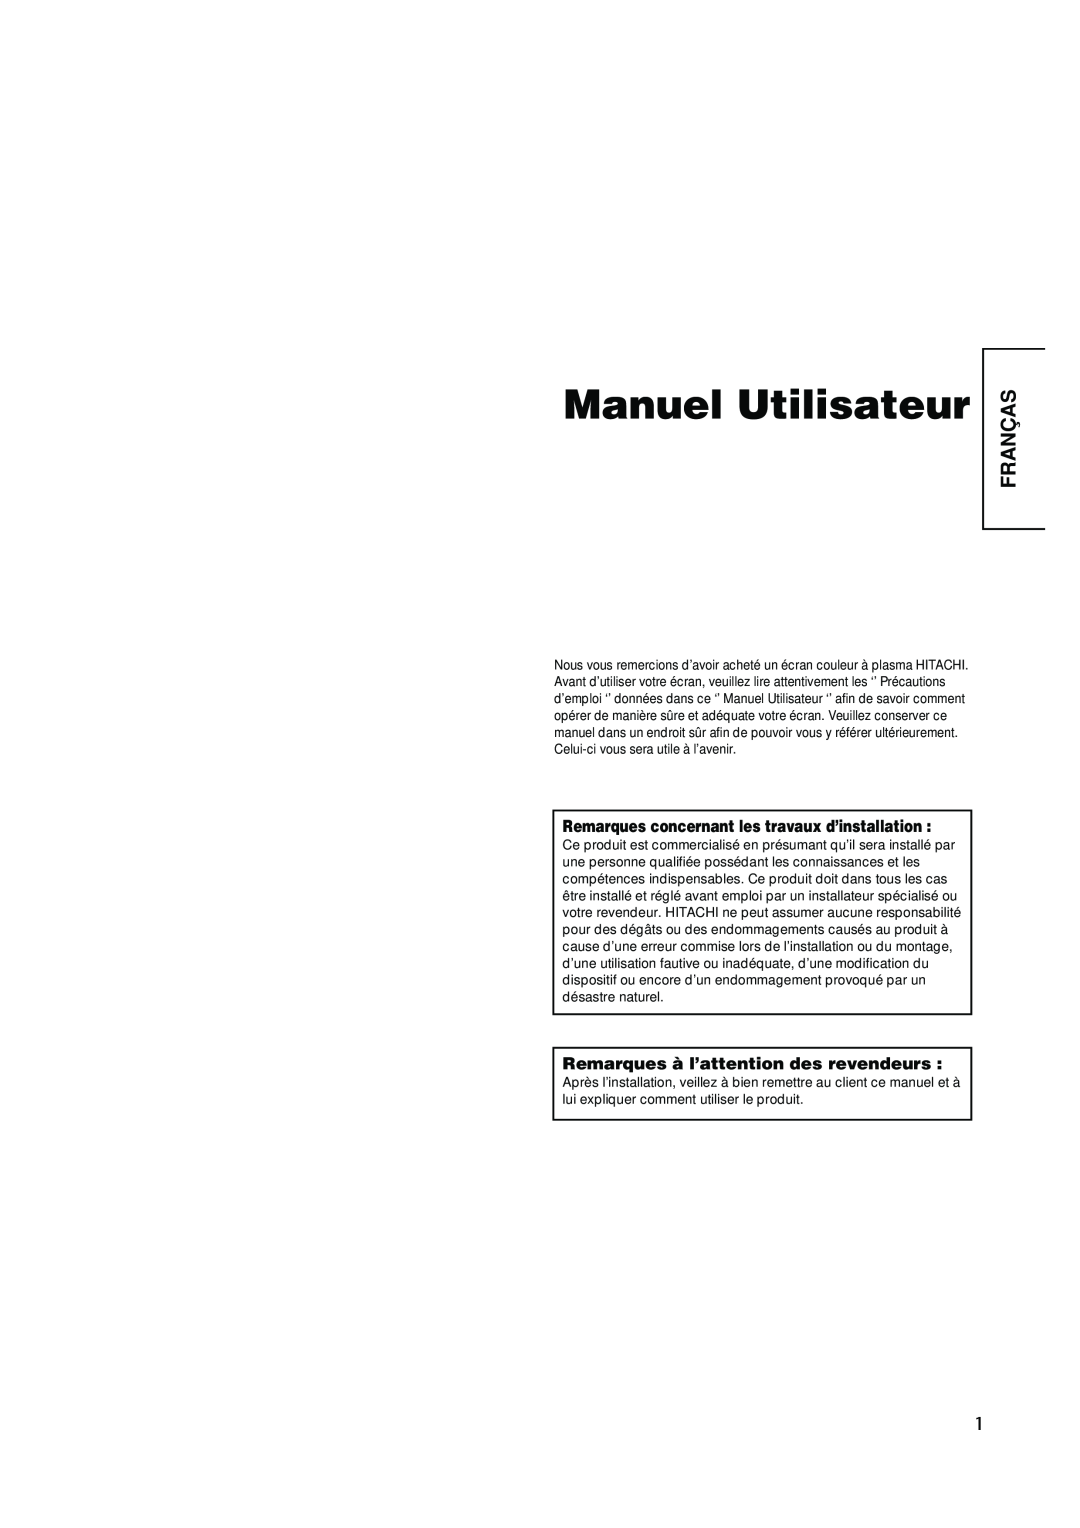 Hitachi PW1A user manual Manuel Utilisateur, Franças, Remarques concernant les travaux d’installation 